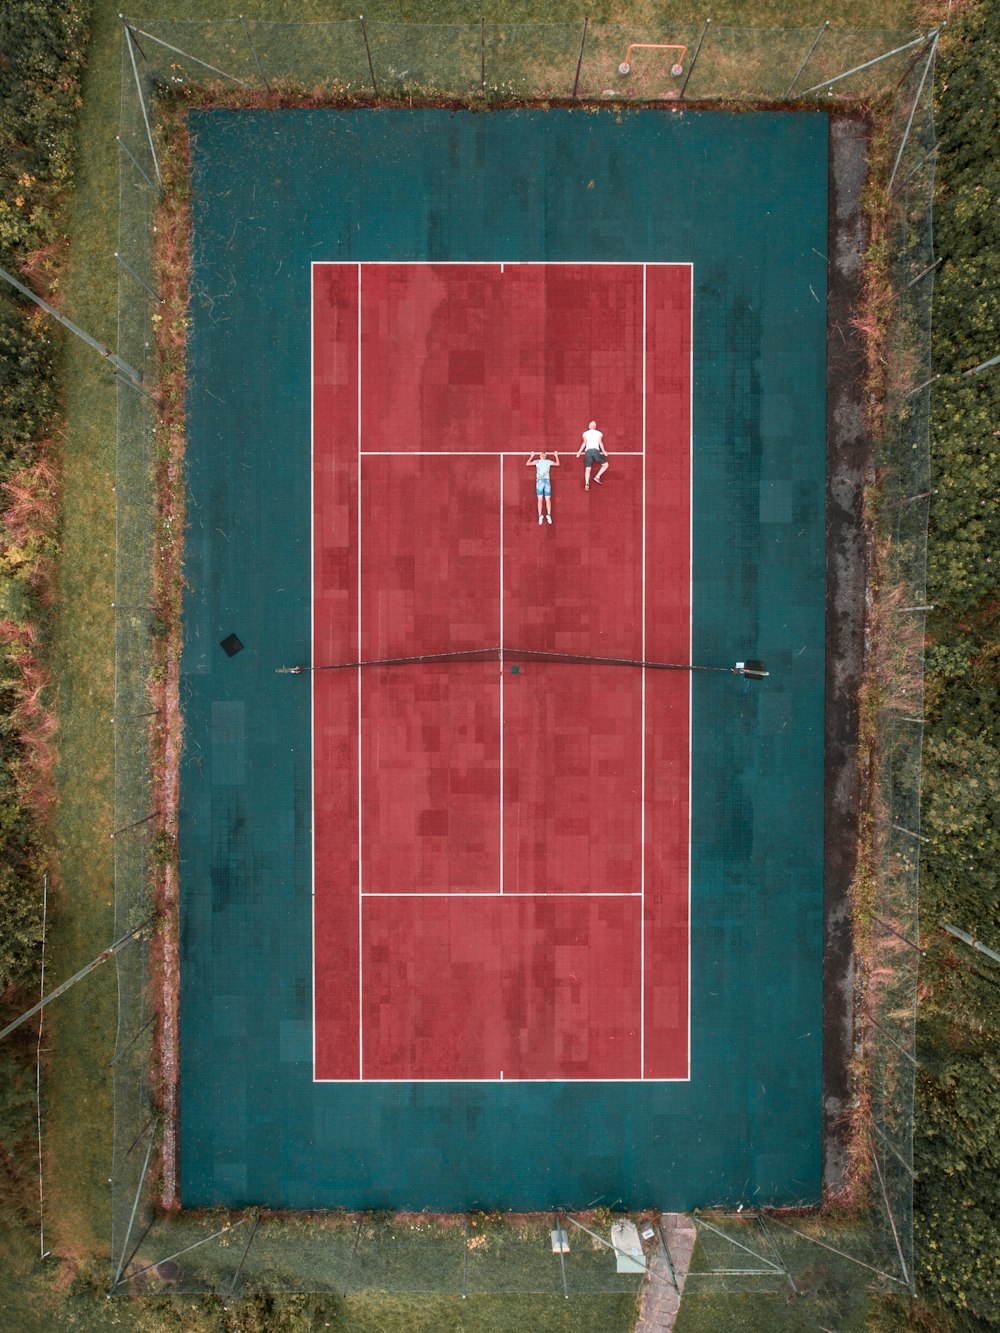 zwei Personen liegen auf dem Tennisplatz